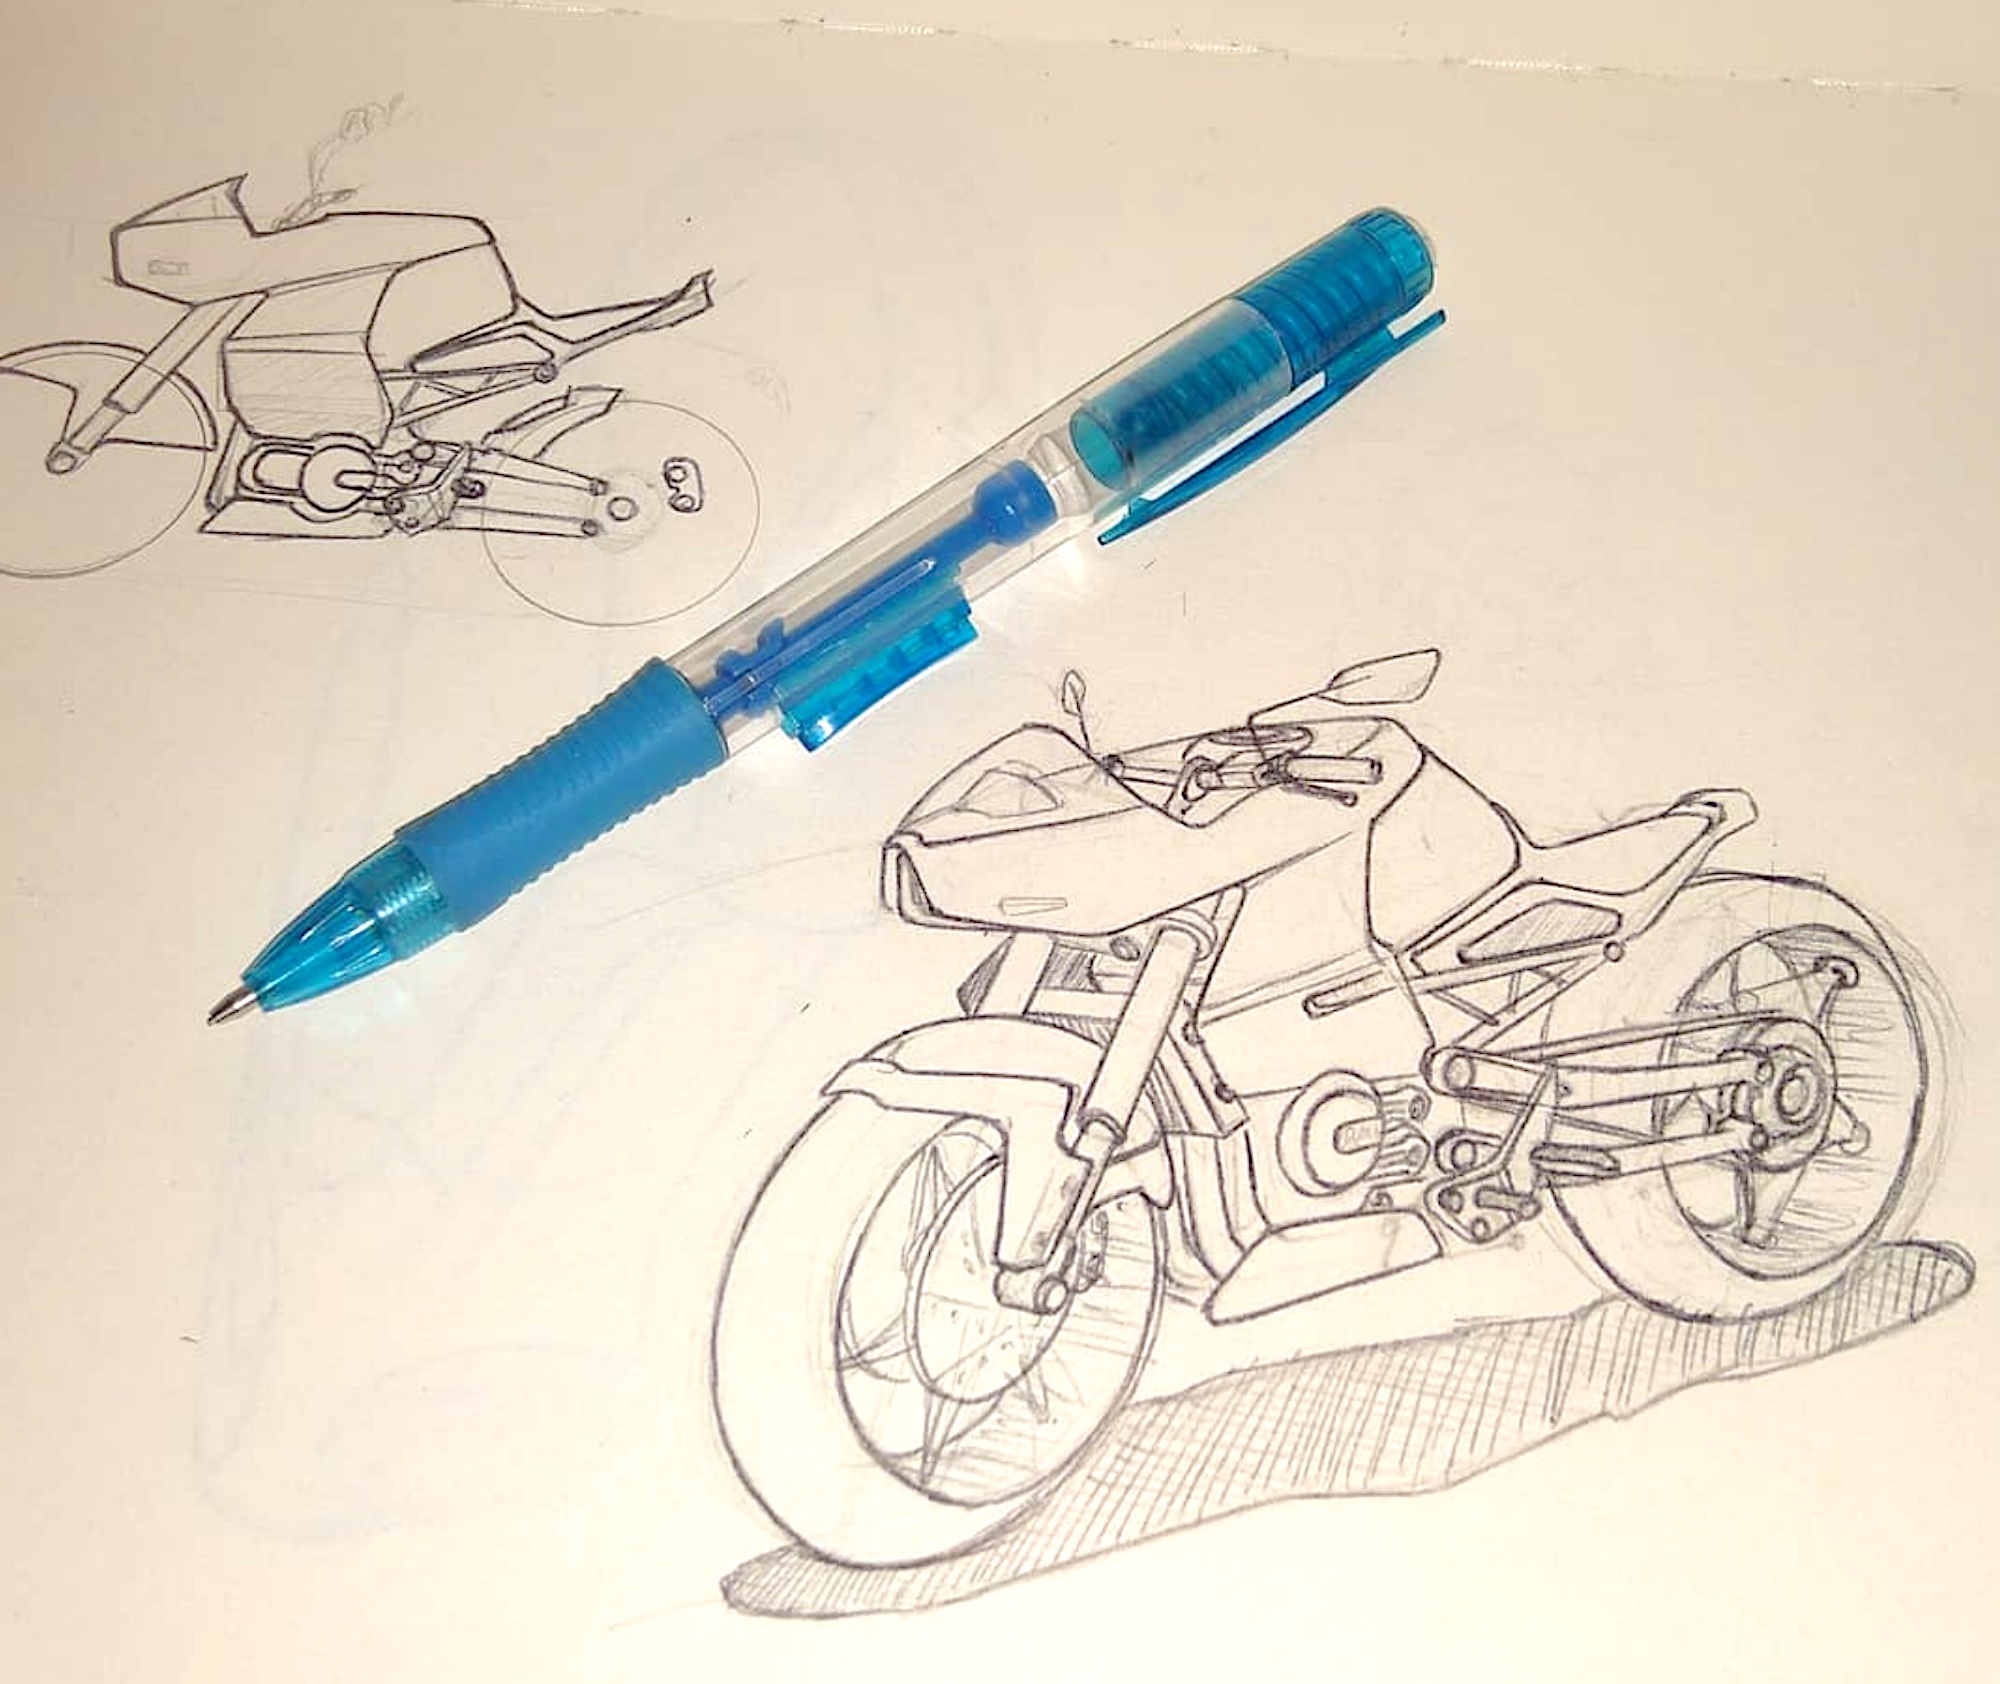 Motorcycle concept sketches, drawn by Gerardo's hand. Media courtesy of Gerardo's team.